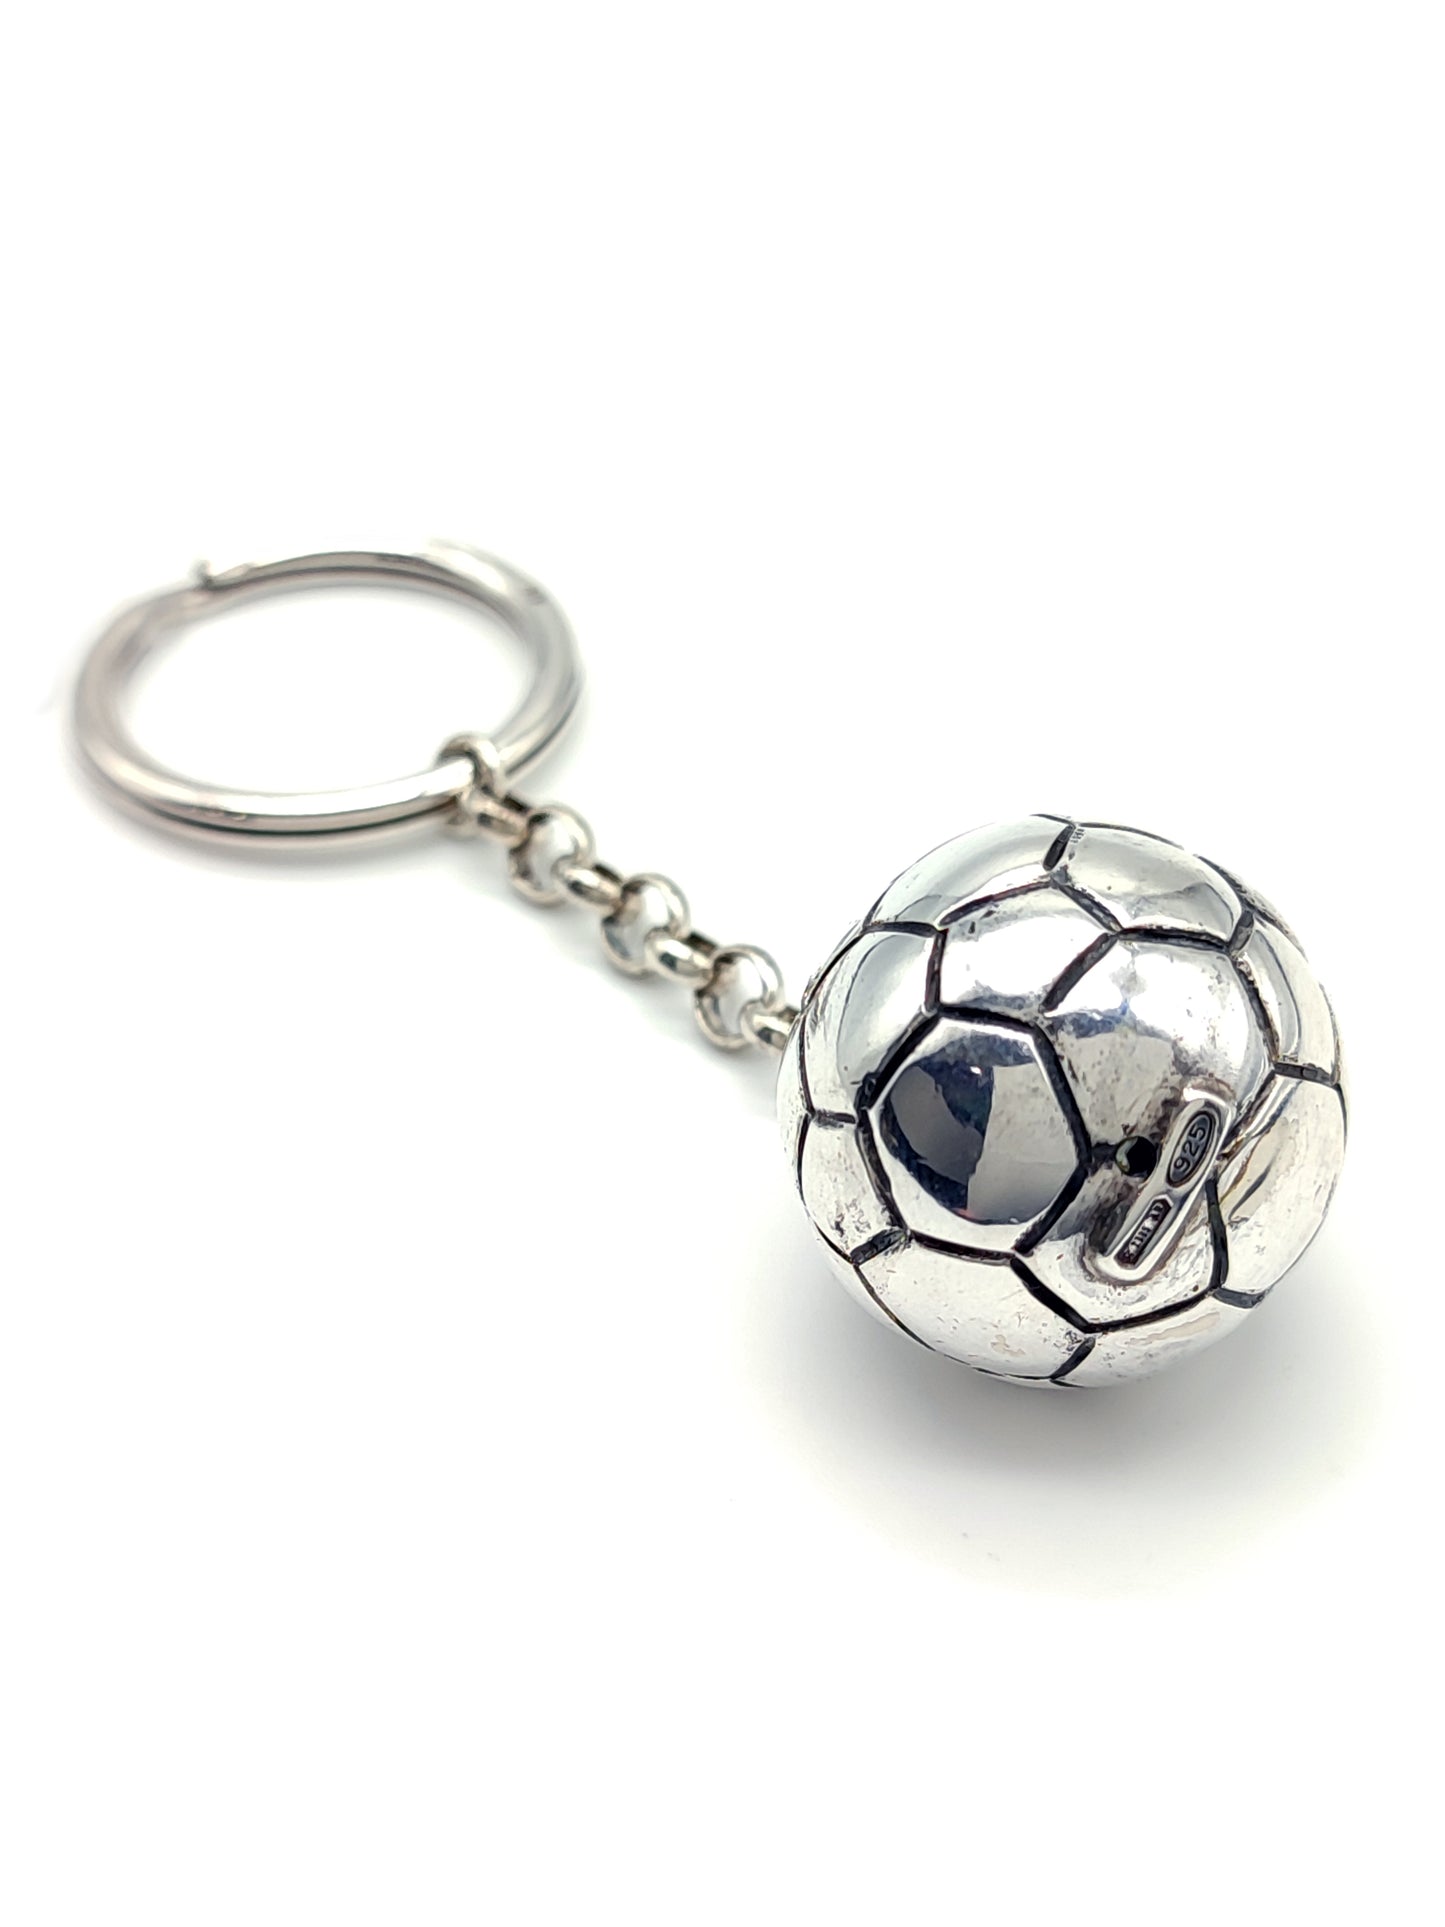 Portachiavi in argento con pallone da calcio – Gioielli Pavan